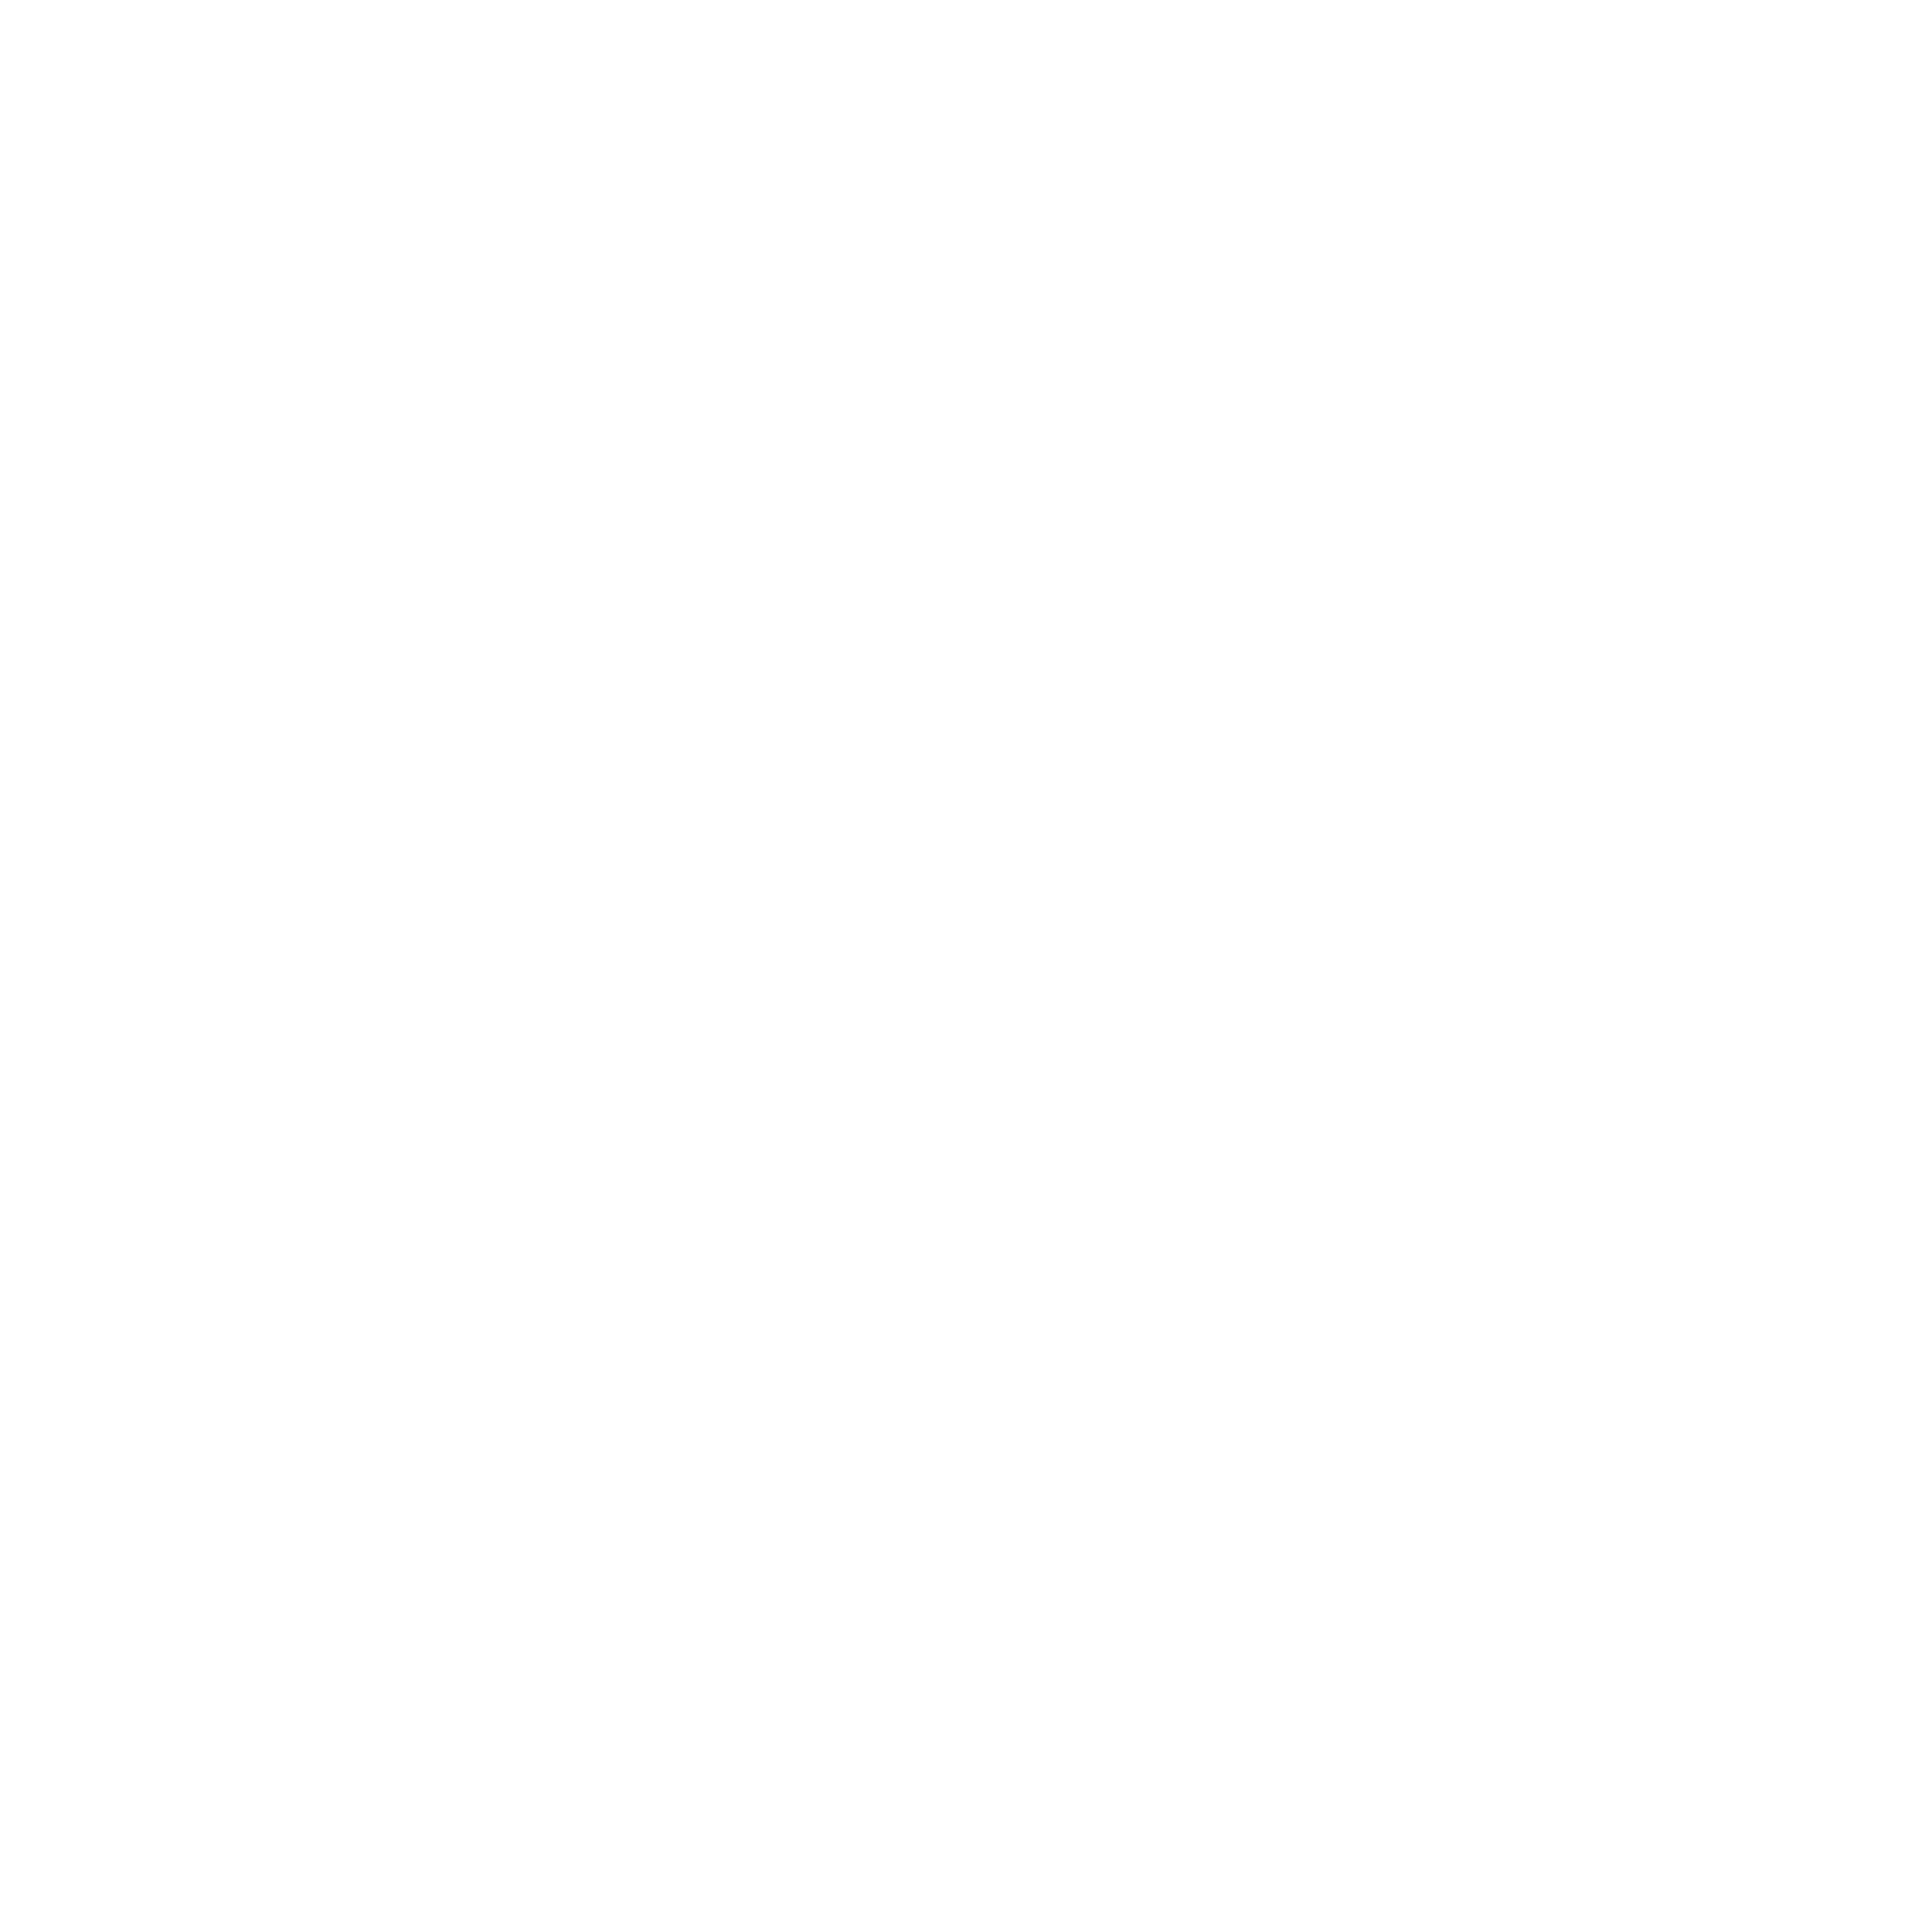 PLDT Logo - PLDT Logo PNG Transparent & SVG Vector - Freebie Supply